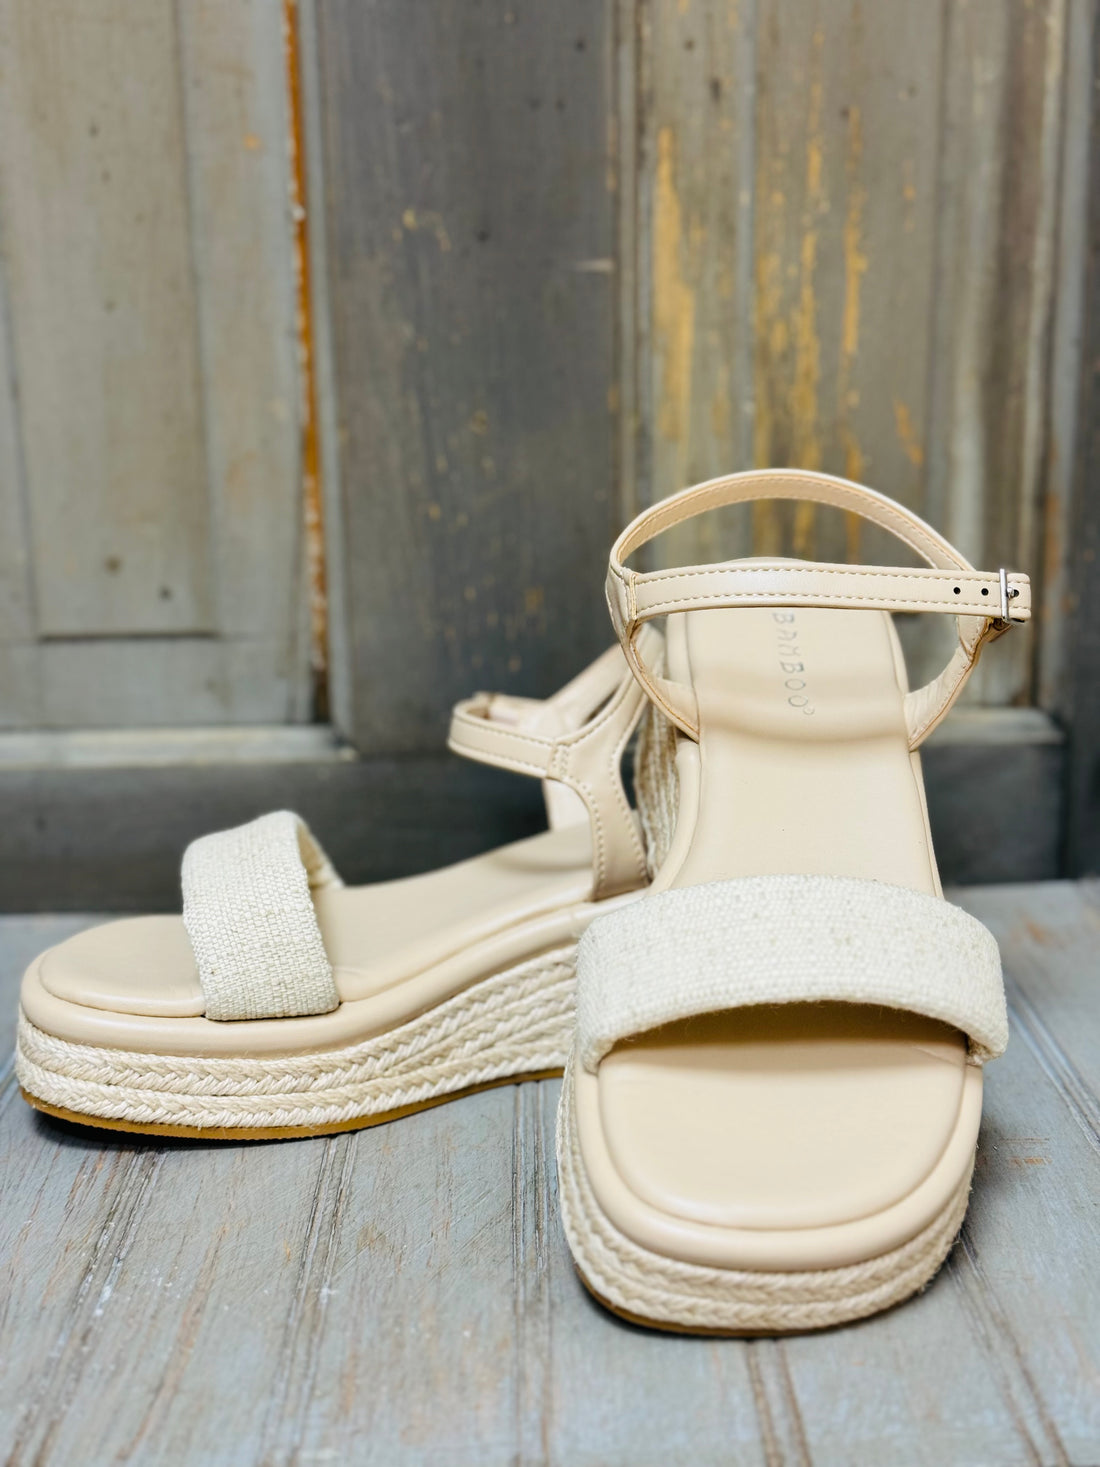 The Oblique Beige Sandals